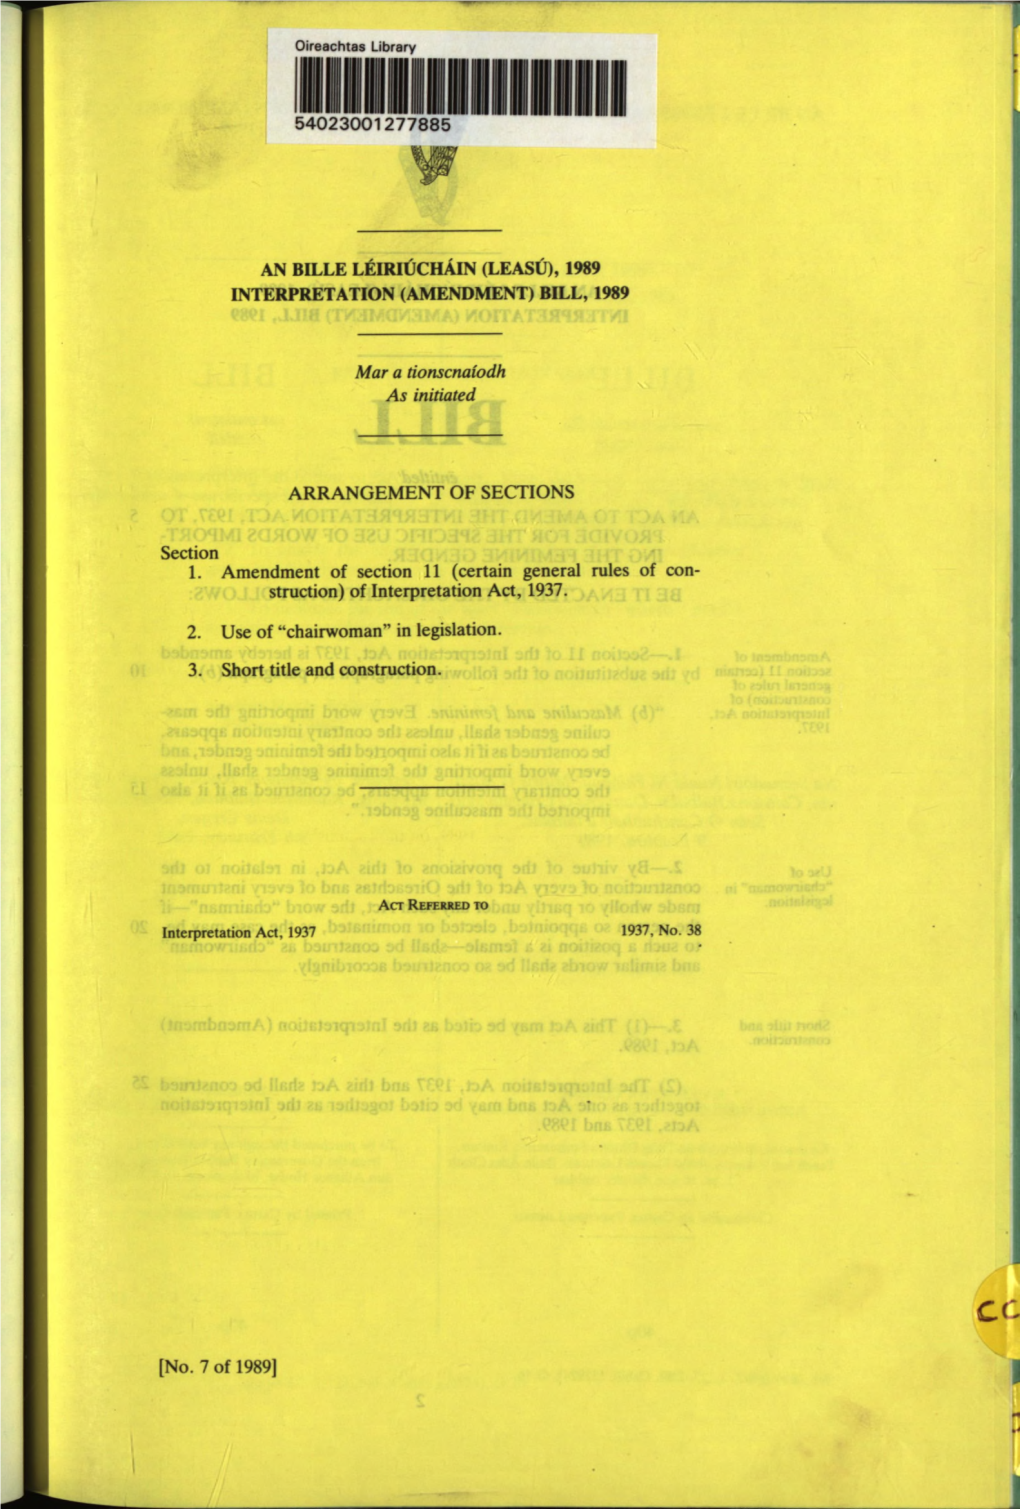 54023001277885 an BILLE LEIRIUCHAIN (LEASU), 1989 INTERPRETATION (AMENDMENT) BILL, 1989 Mar a Tionscnaiodh As Initiated ARRANGEM